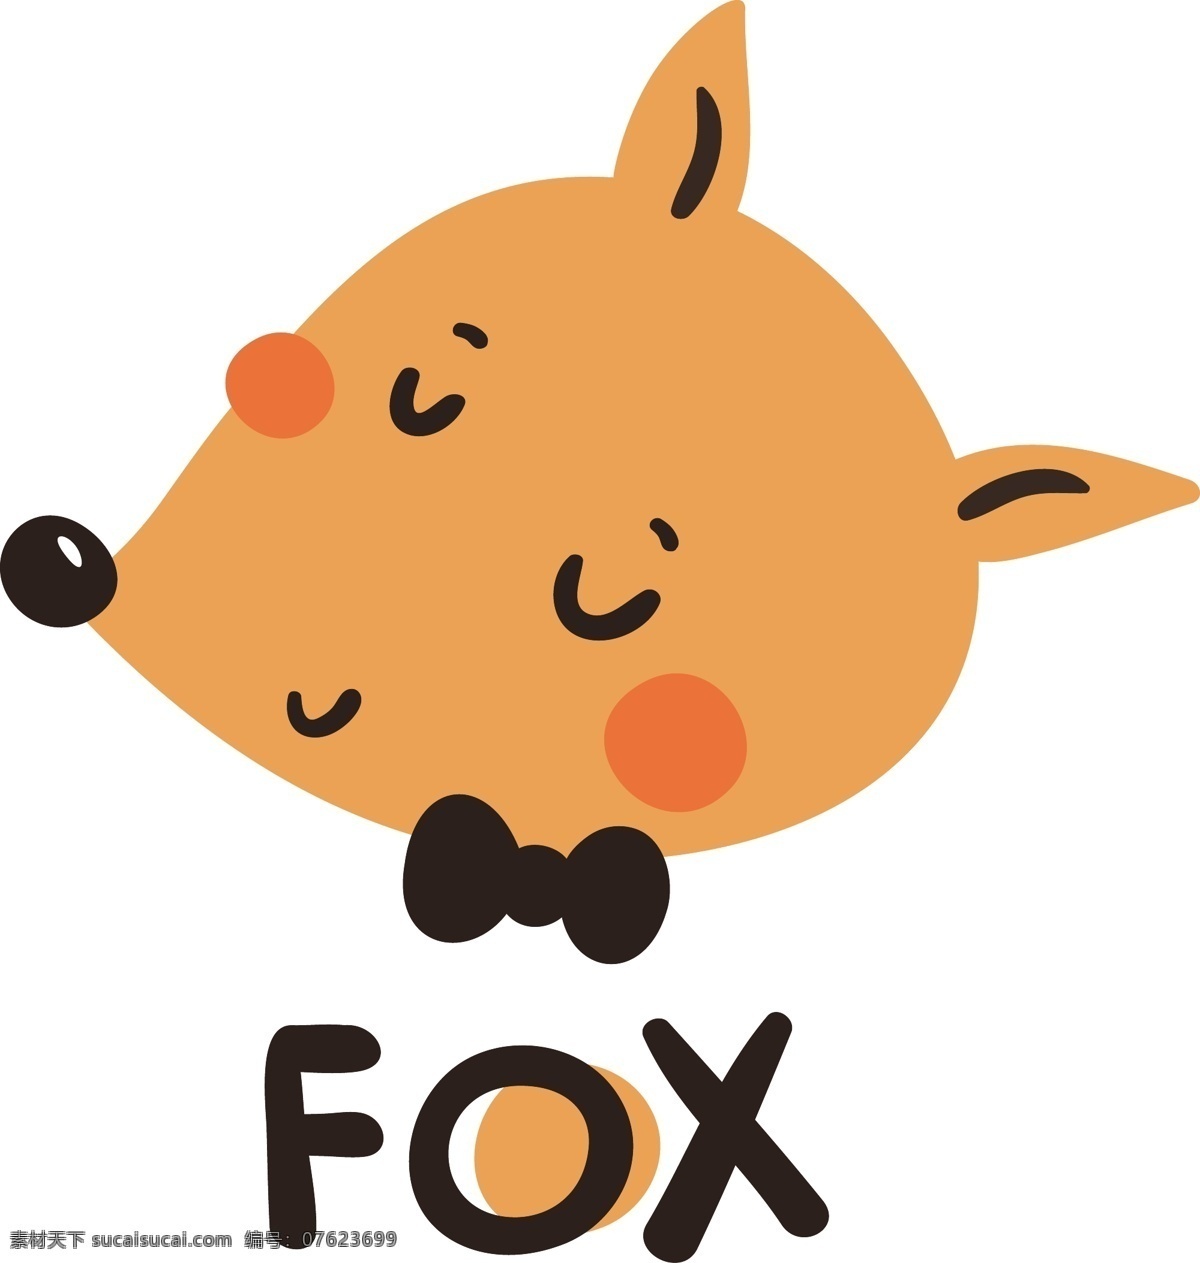 fox 可爱 卡通 动物 人物 矢量